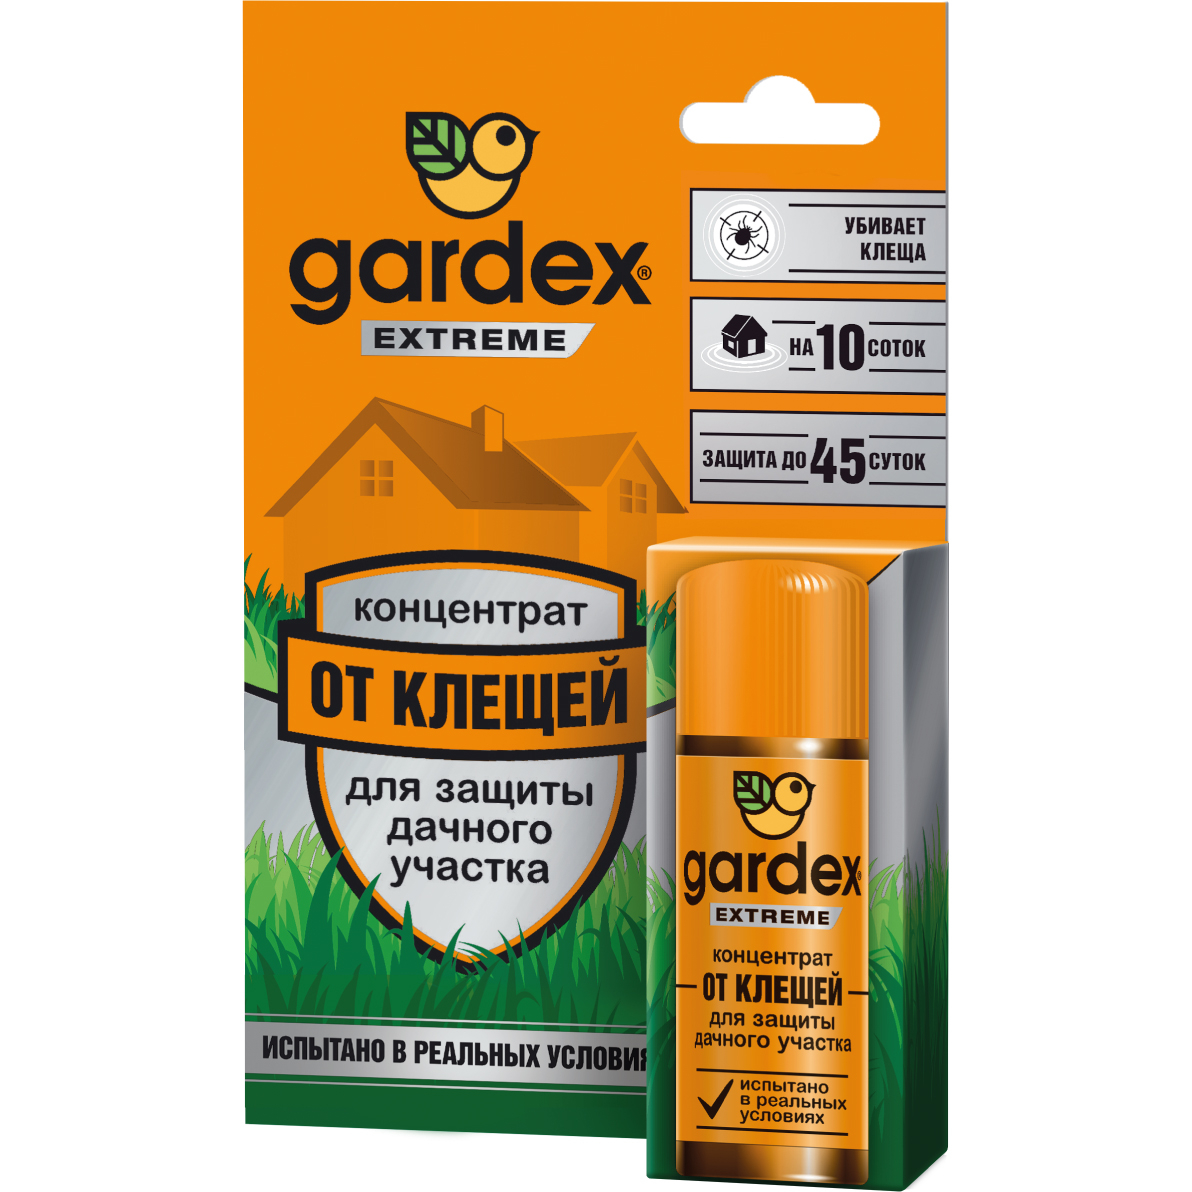 Средство Gardex Extreme концентрат для защиты дачного участка от клещей инсектицид extreme от клещей жидкость 50 мл концентрат на 10 соток gardex